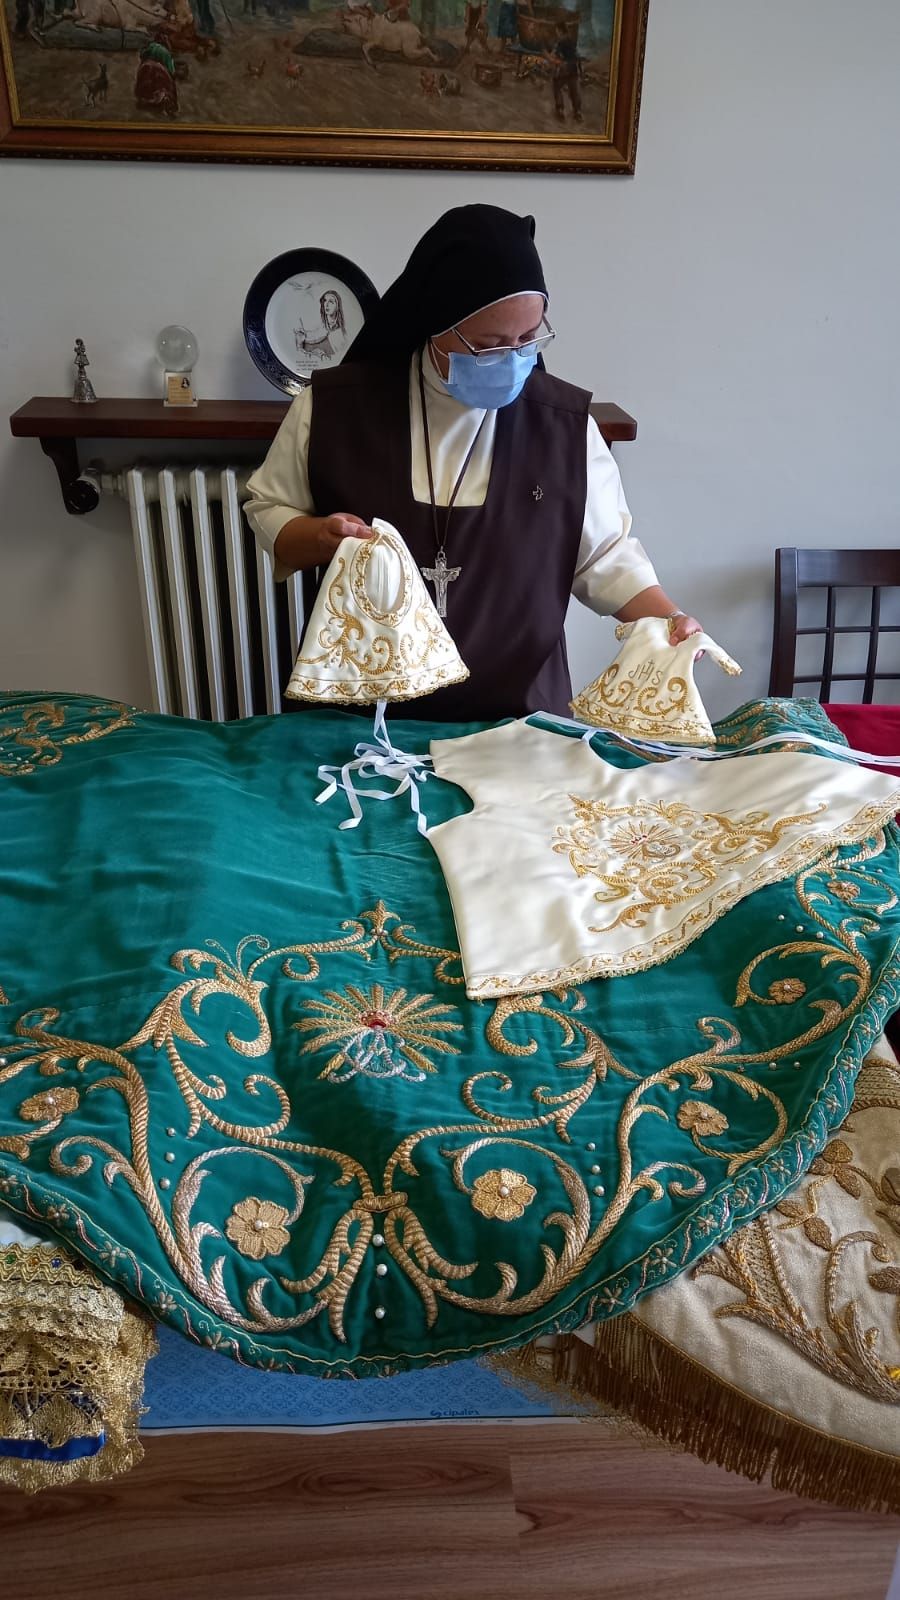 El ropero de la Santina: más de medio centenar de mantos dignos de una reina